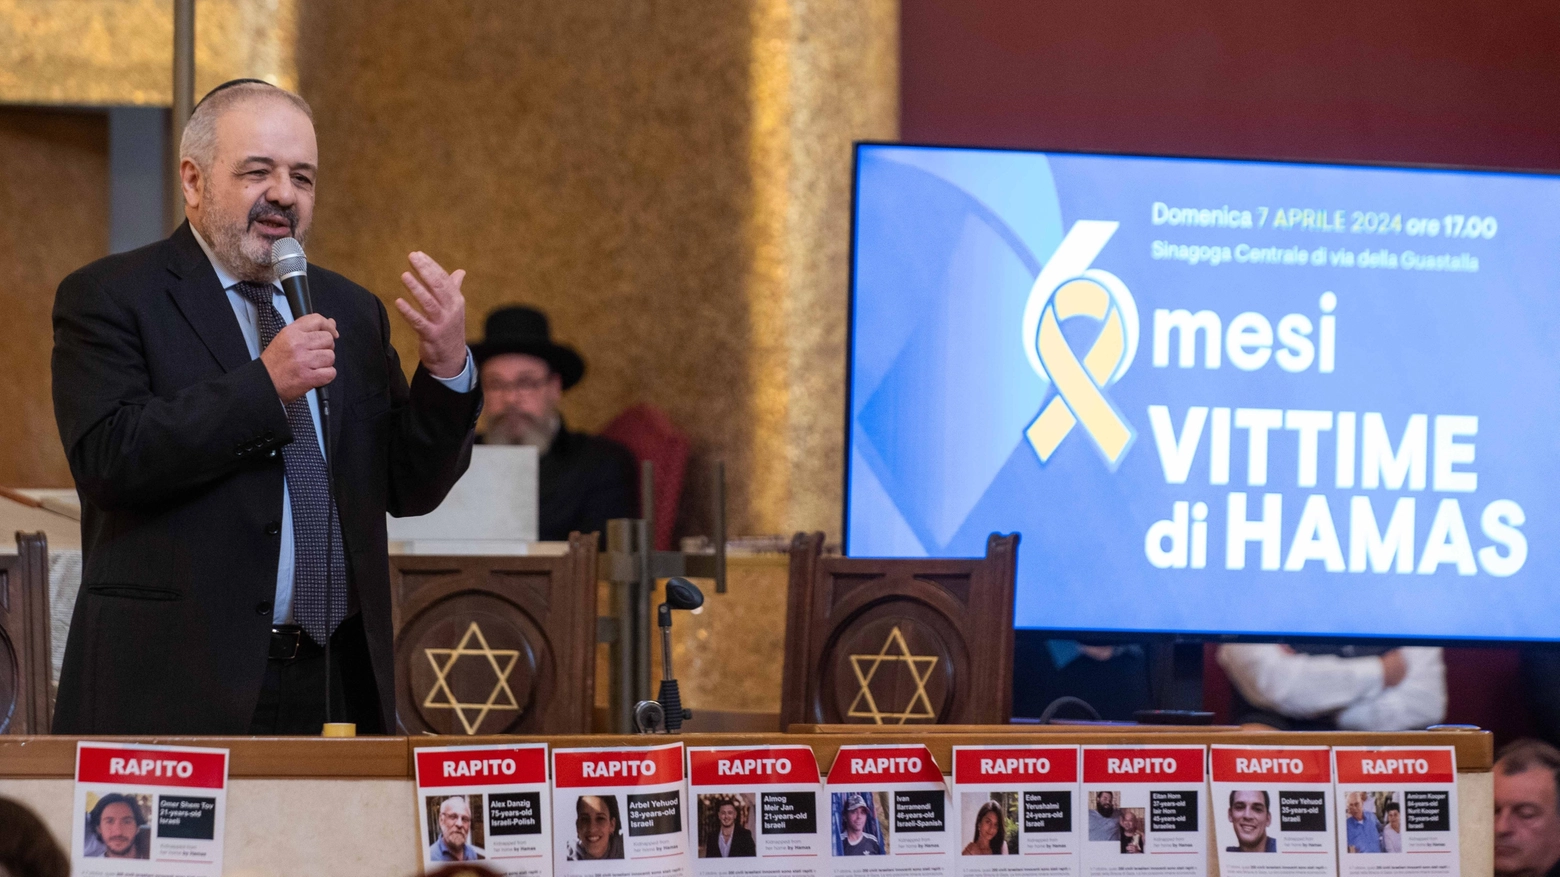 Commemorazione vittime di Hamas alla sinagoga centrale di Milano, il rabbino Alfonso Arbib